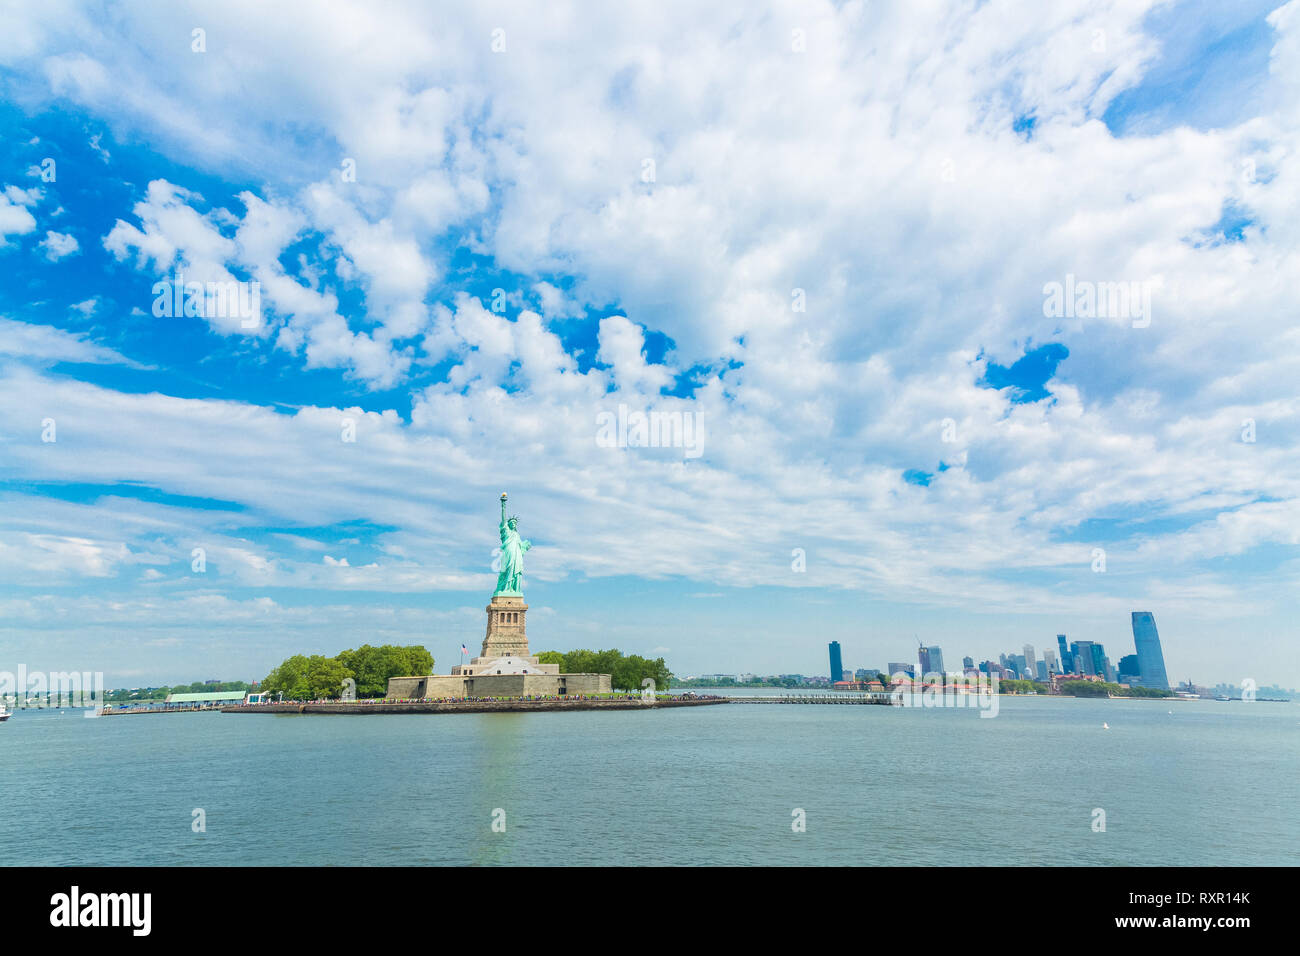 La Estatua de la libertad en la Isla de la Libertad en Nueva York Foto de stock